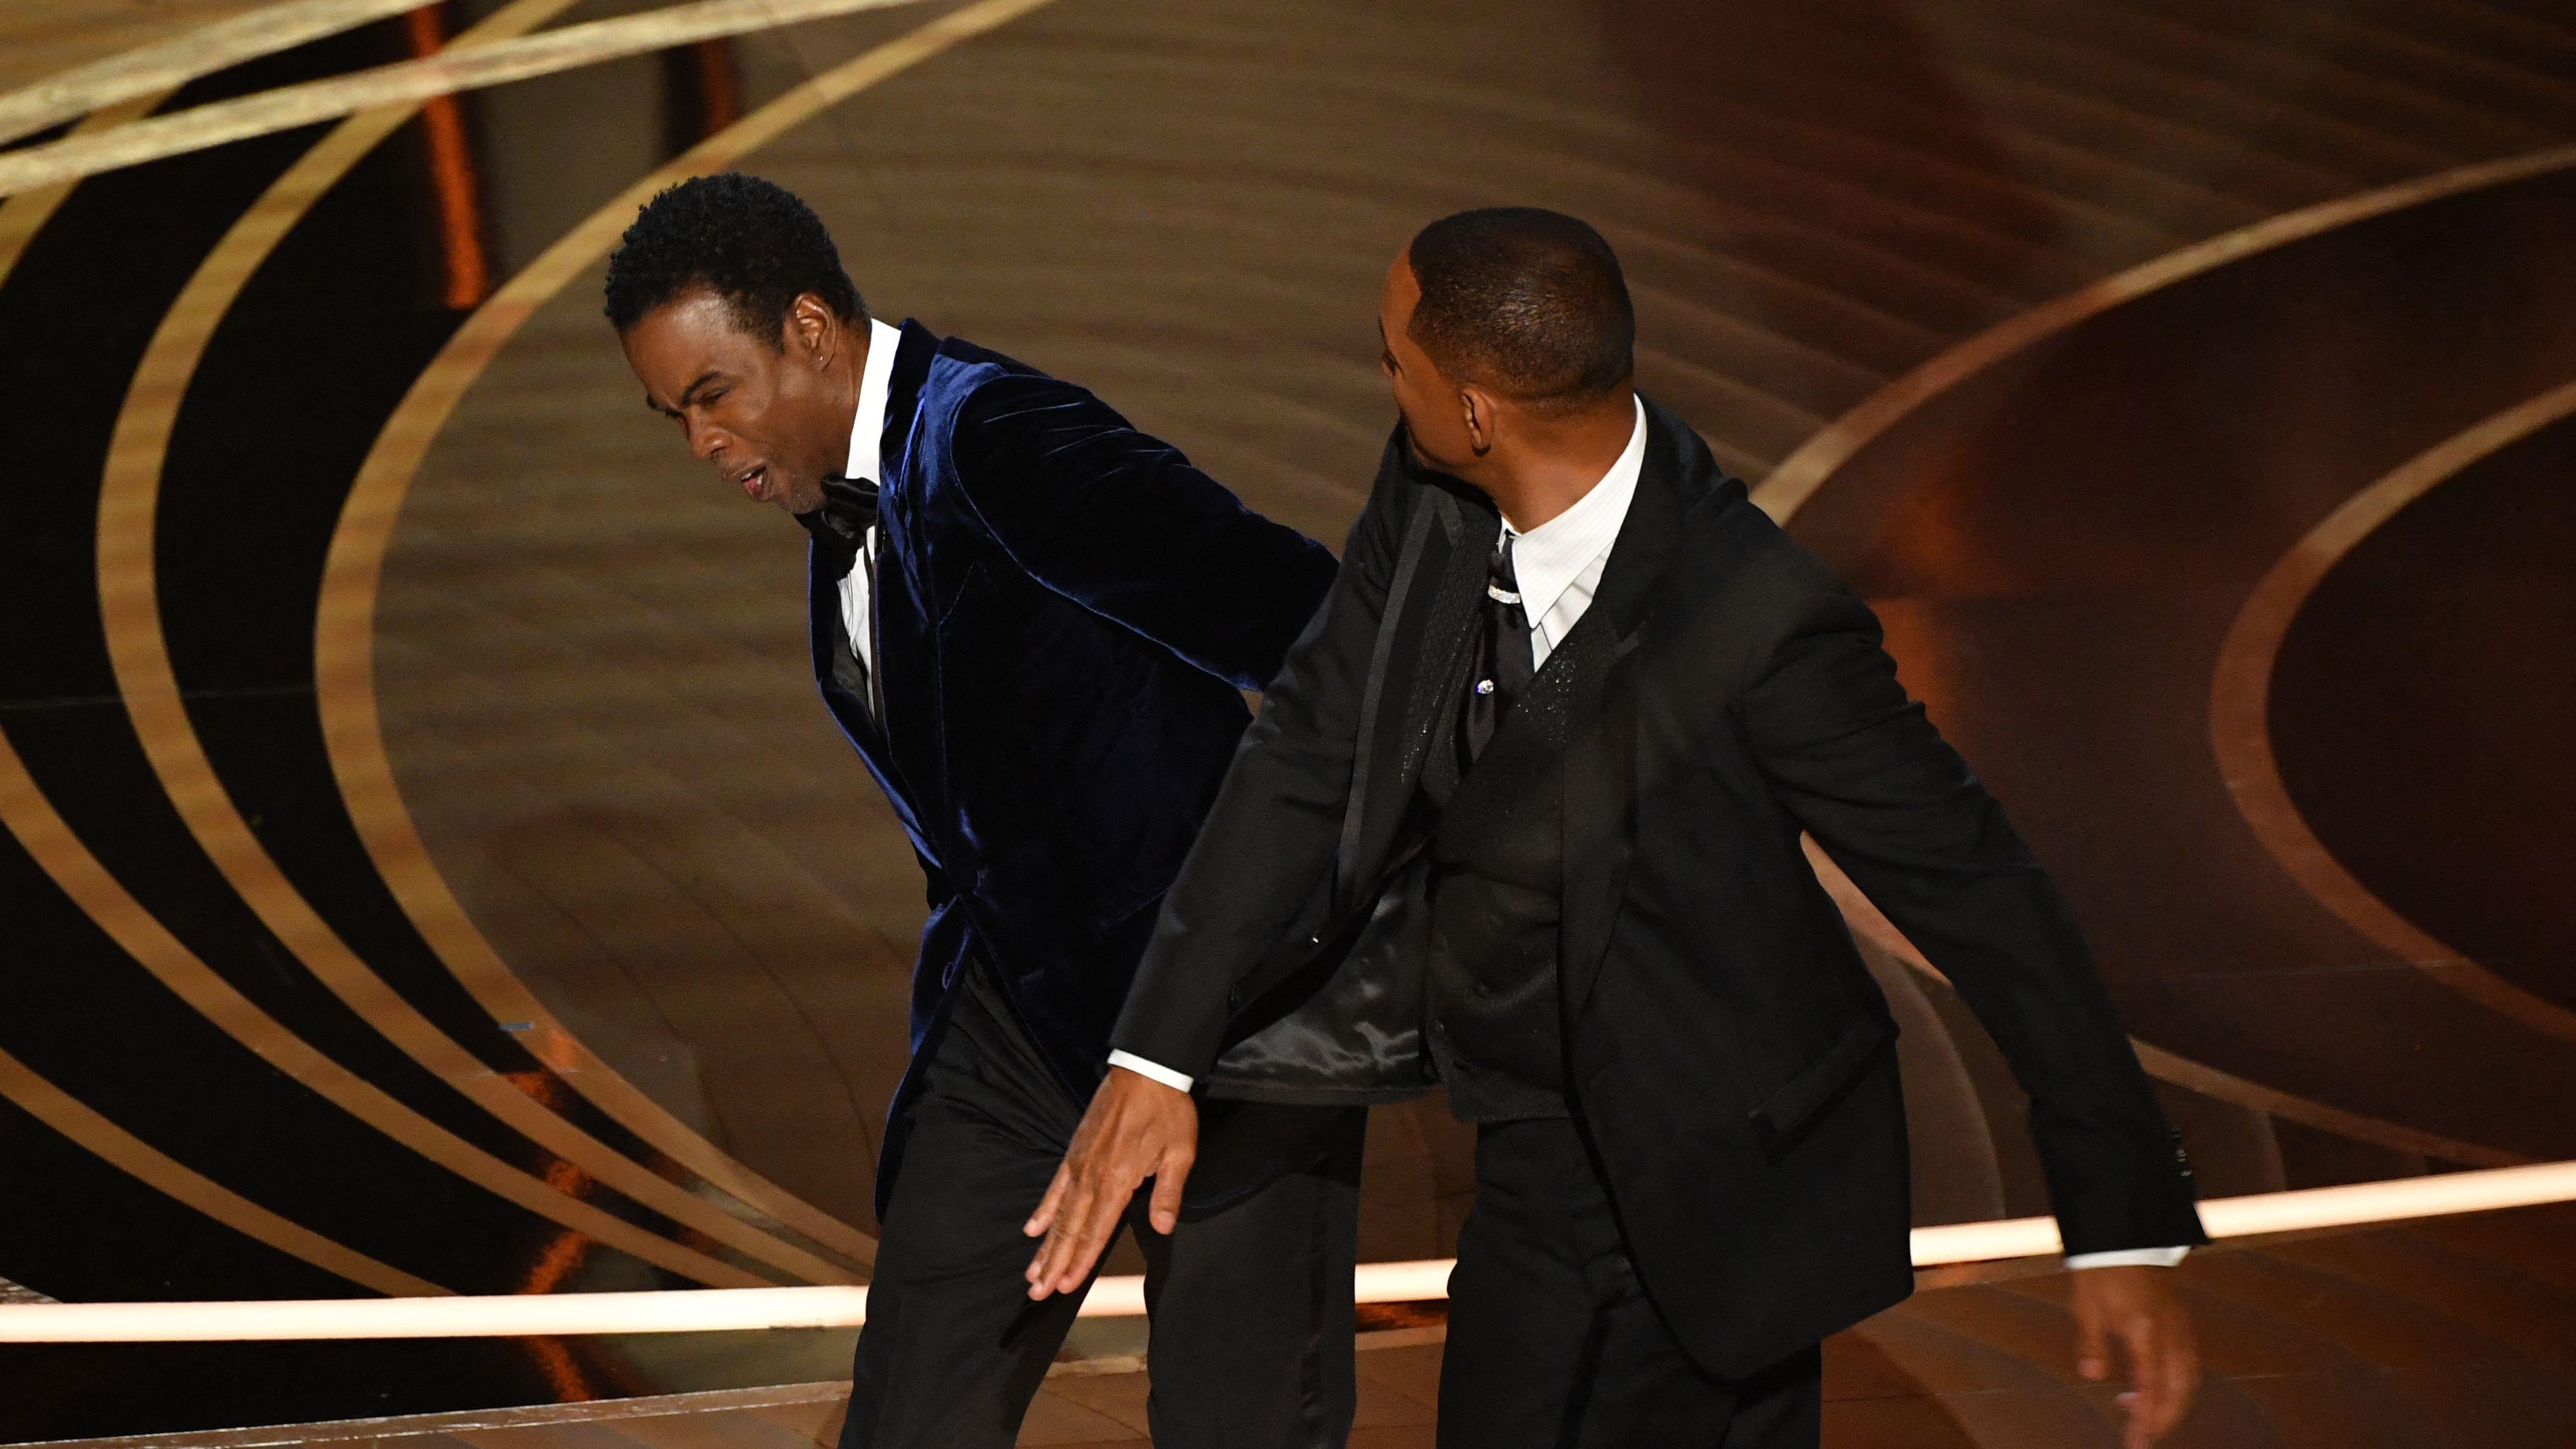 La gifle de Will Smith aux Oscars : Vous avez un message
La gifle de Will Smith aux Oscars : Vous avez un message